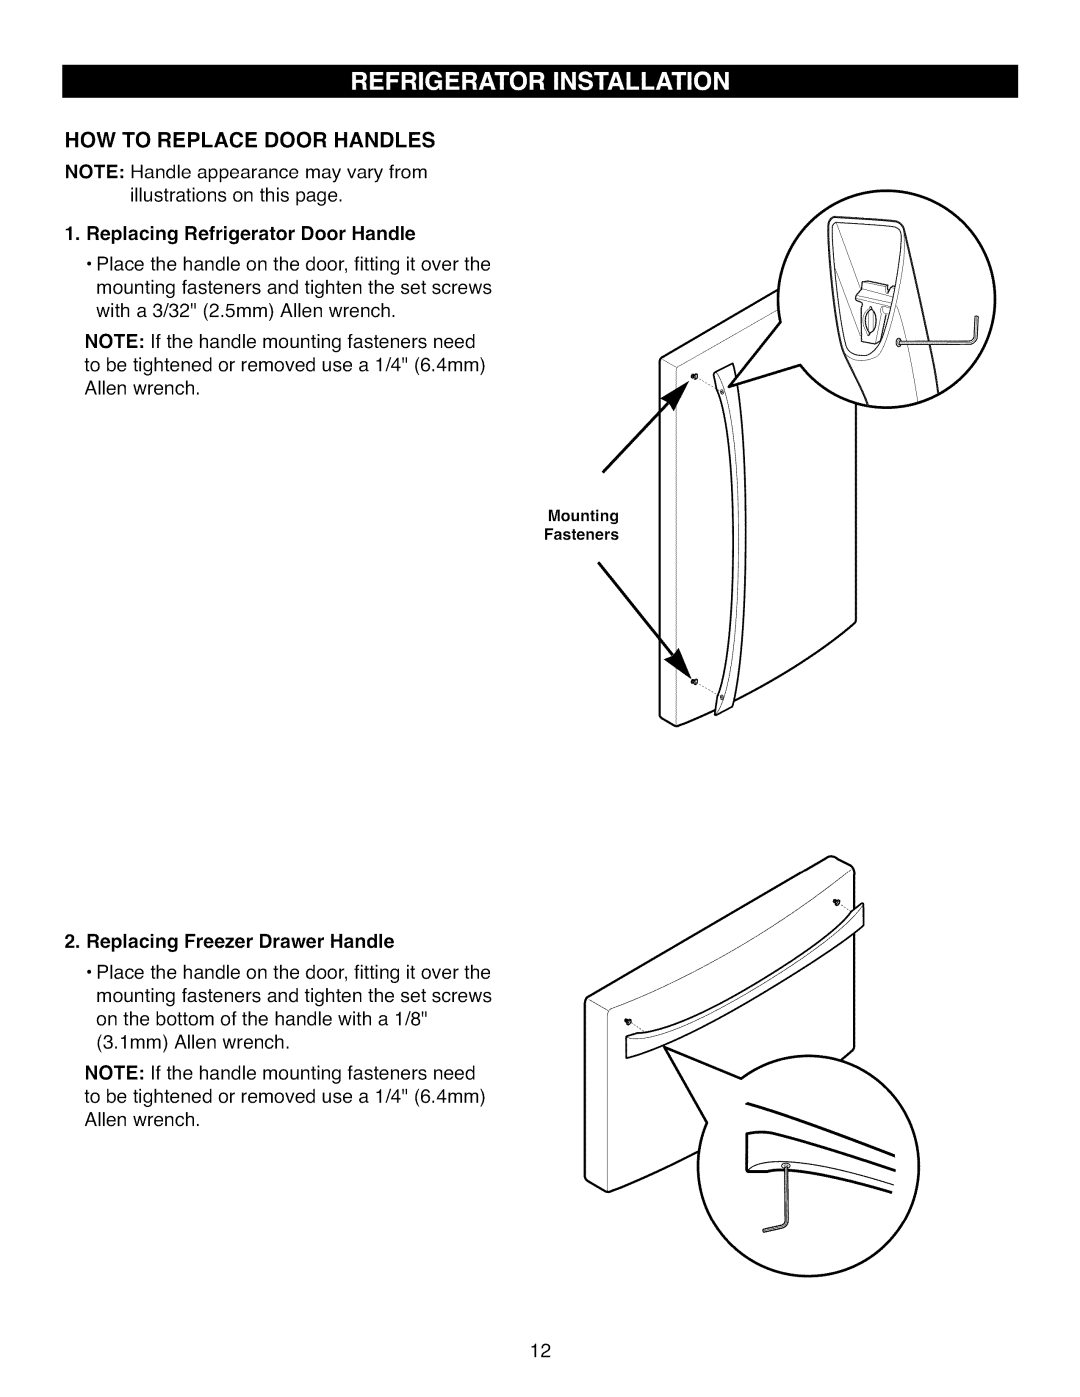 Kenmore 795.7105 manual How To Replace Door Handles, Replacing Refrigerator Door Handle, Replacing Freezer Drawer Handle 